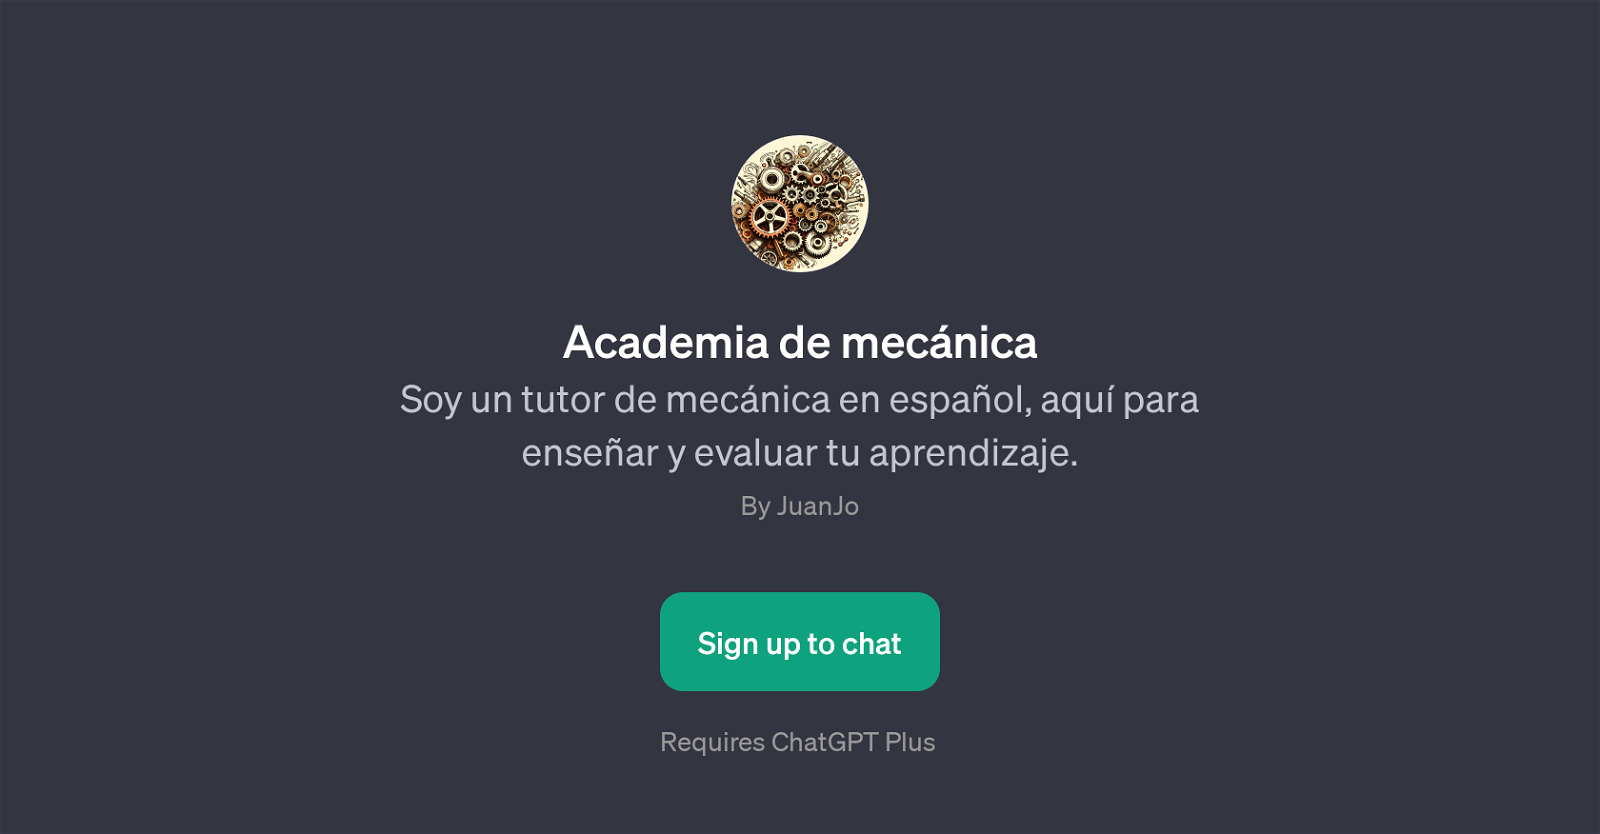 Academia de mecnica website